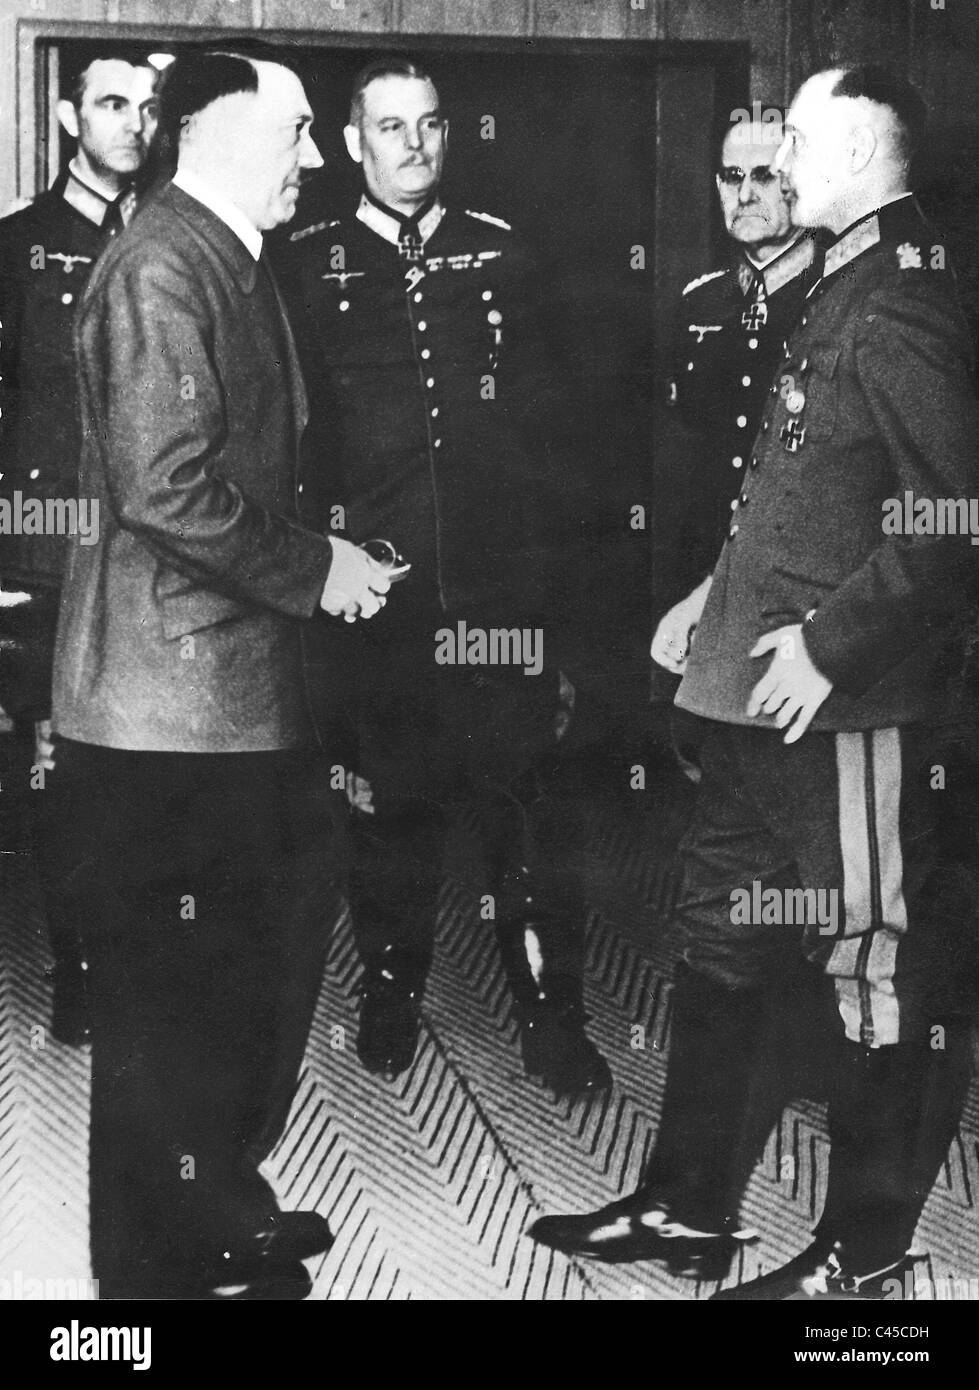 Paulus, Hitler, Keitel, Halder, Brauchitsch, in generale il personale dell'esercito Foto Stock